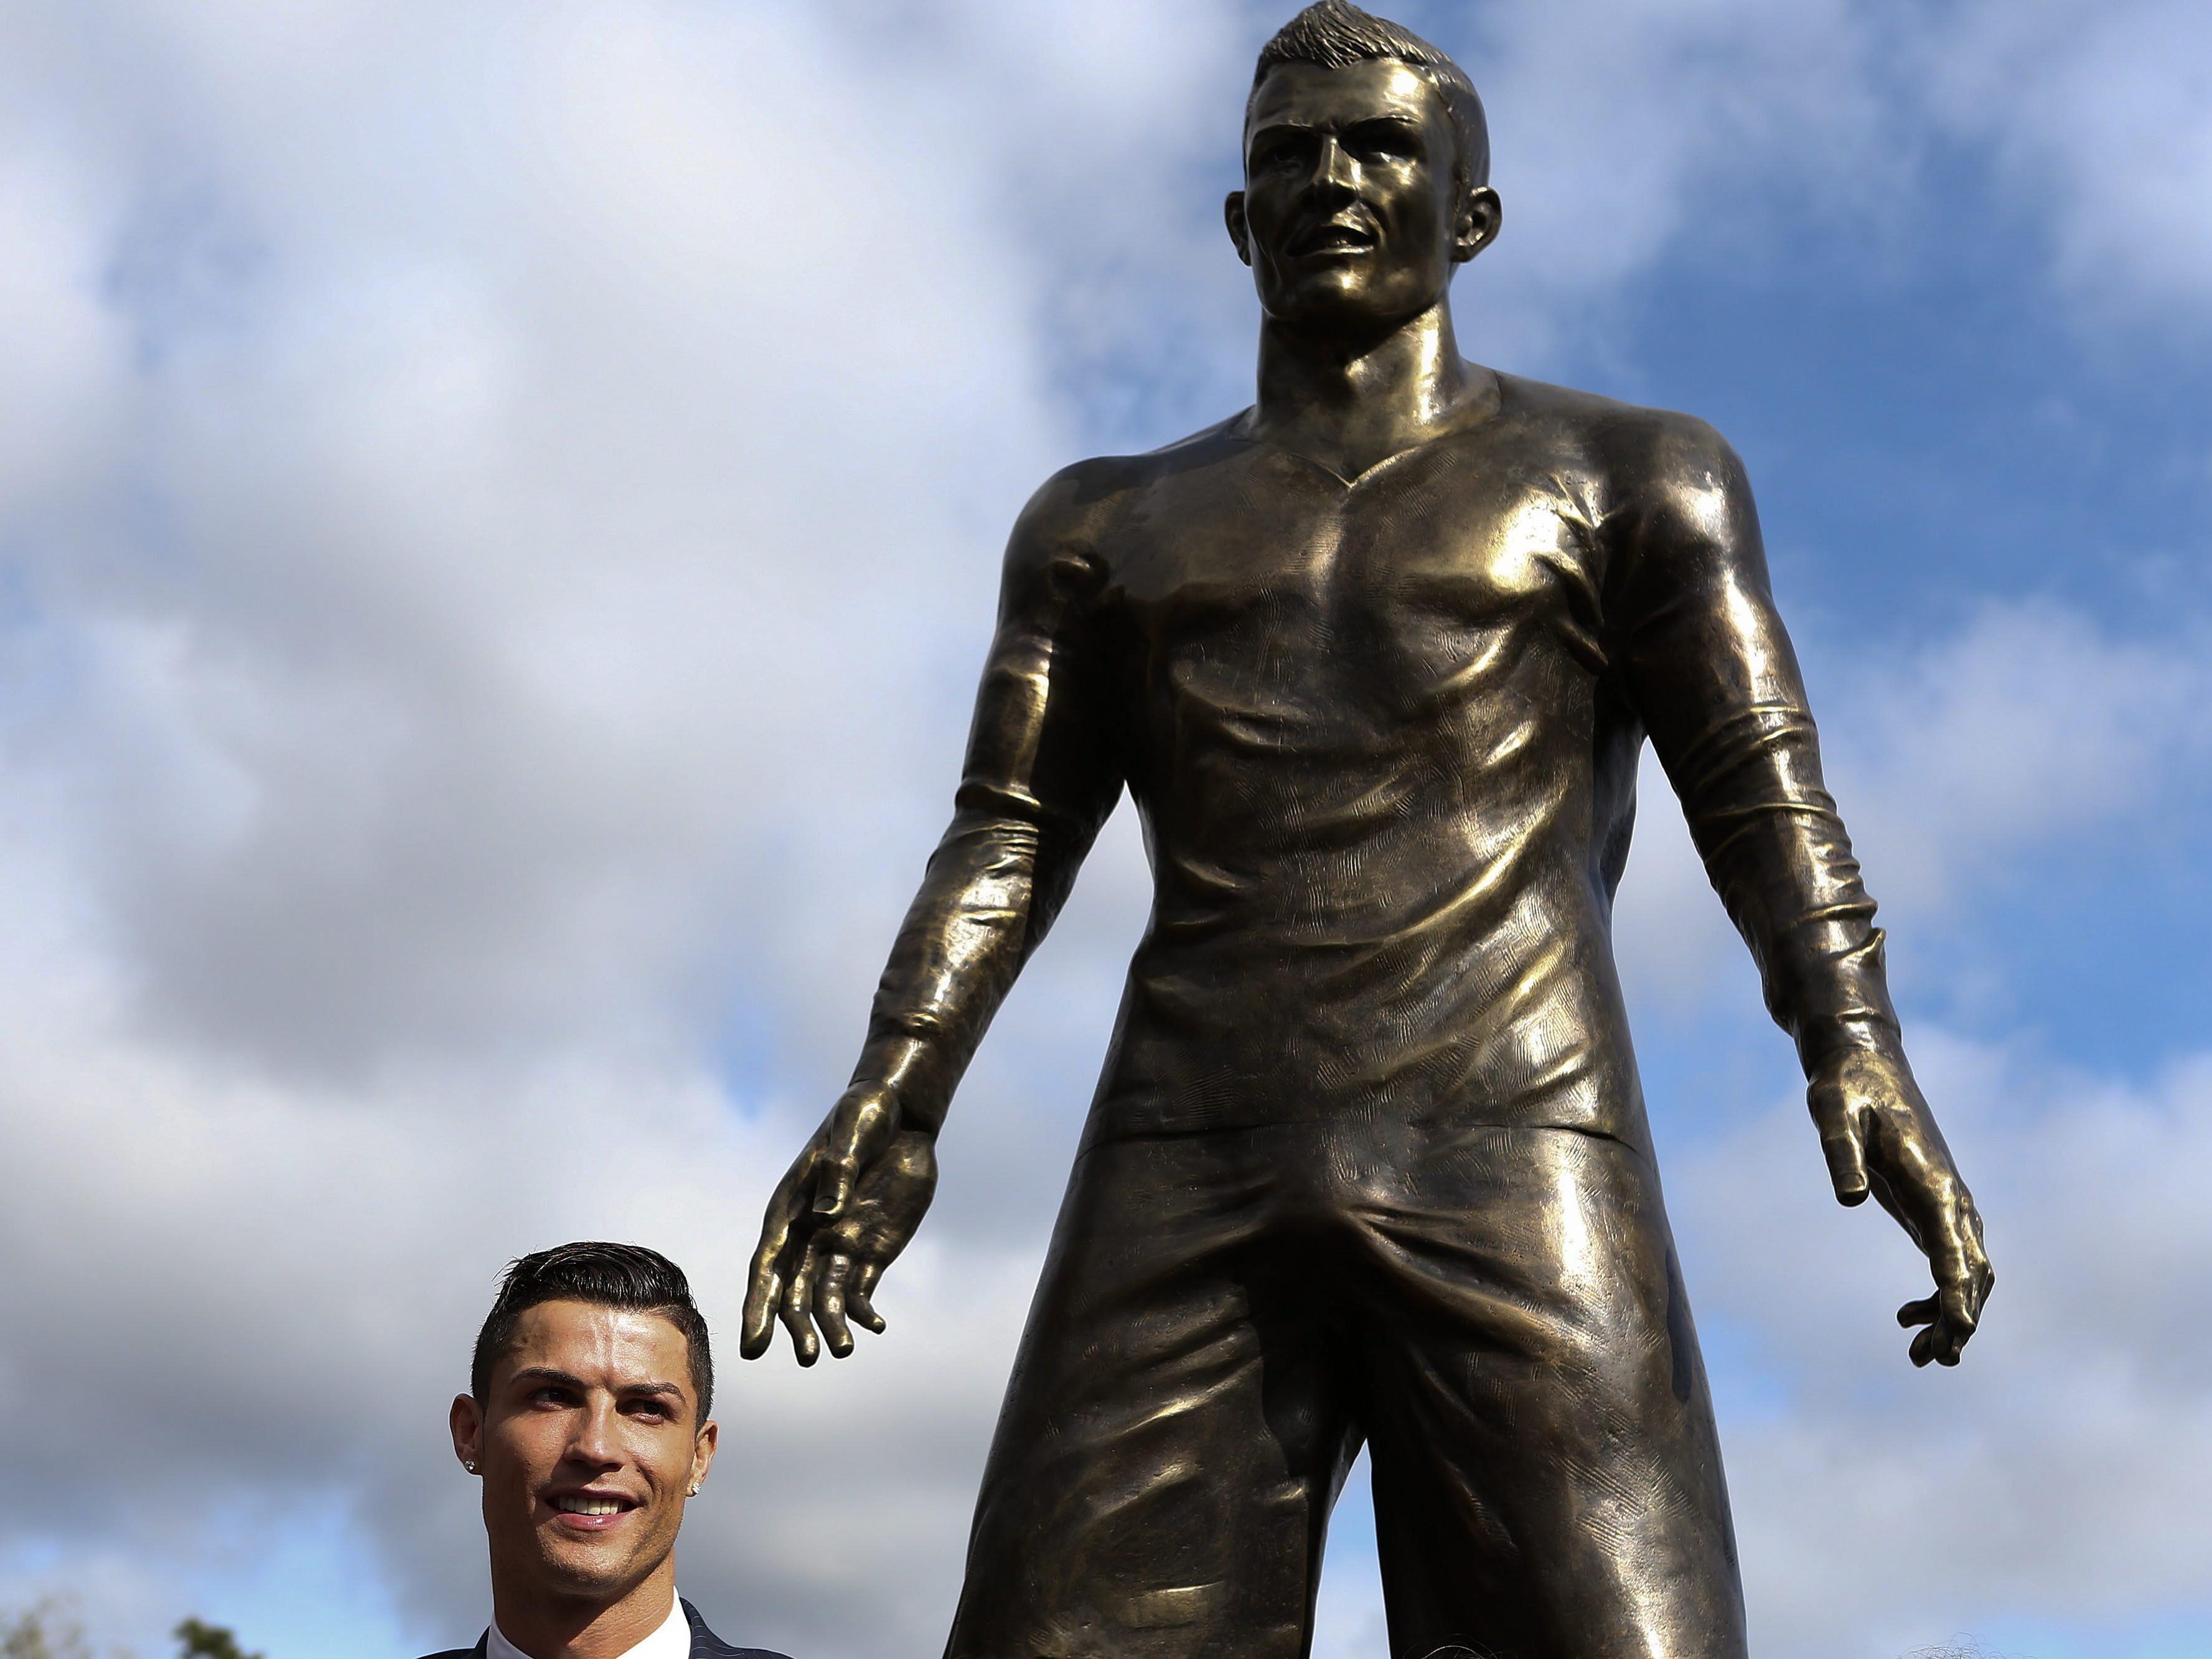 Christiano Ronaldo scheint mit seiner neuen Statue sehr zufrieden zu sein.